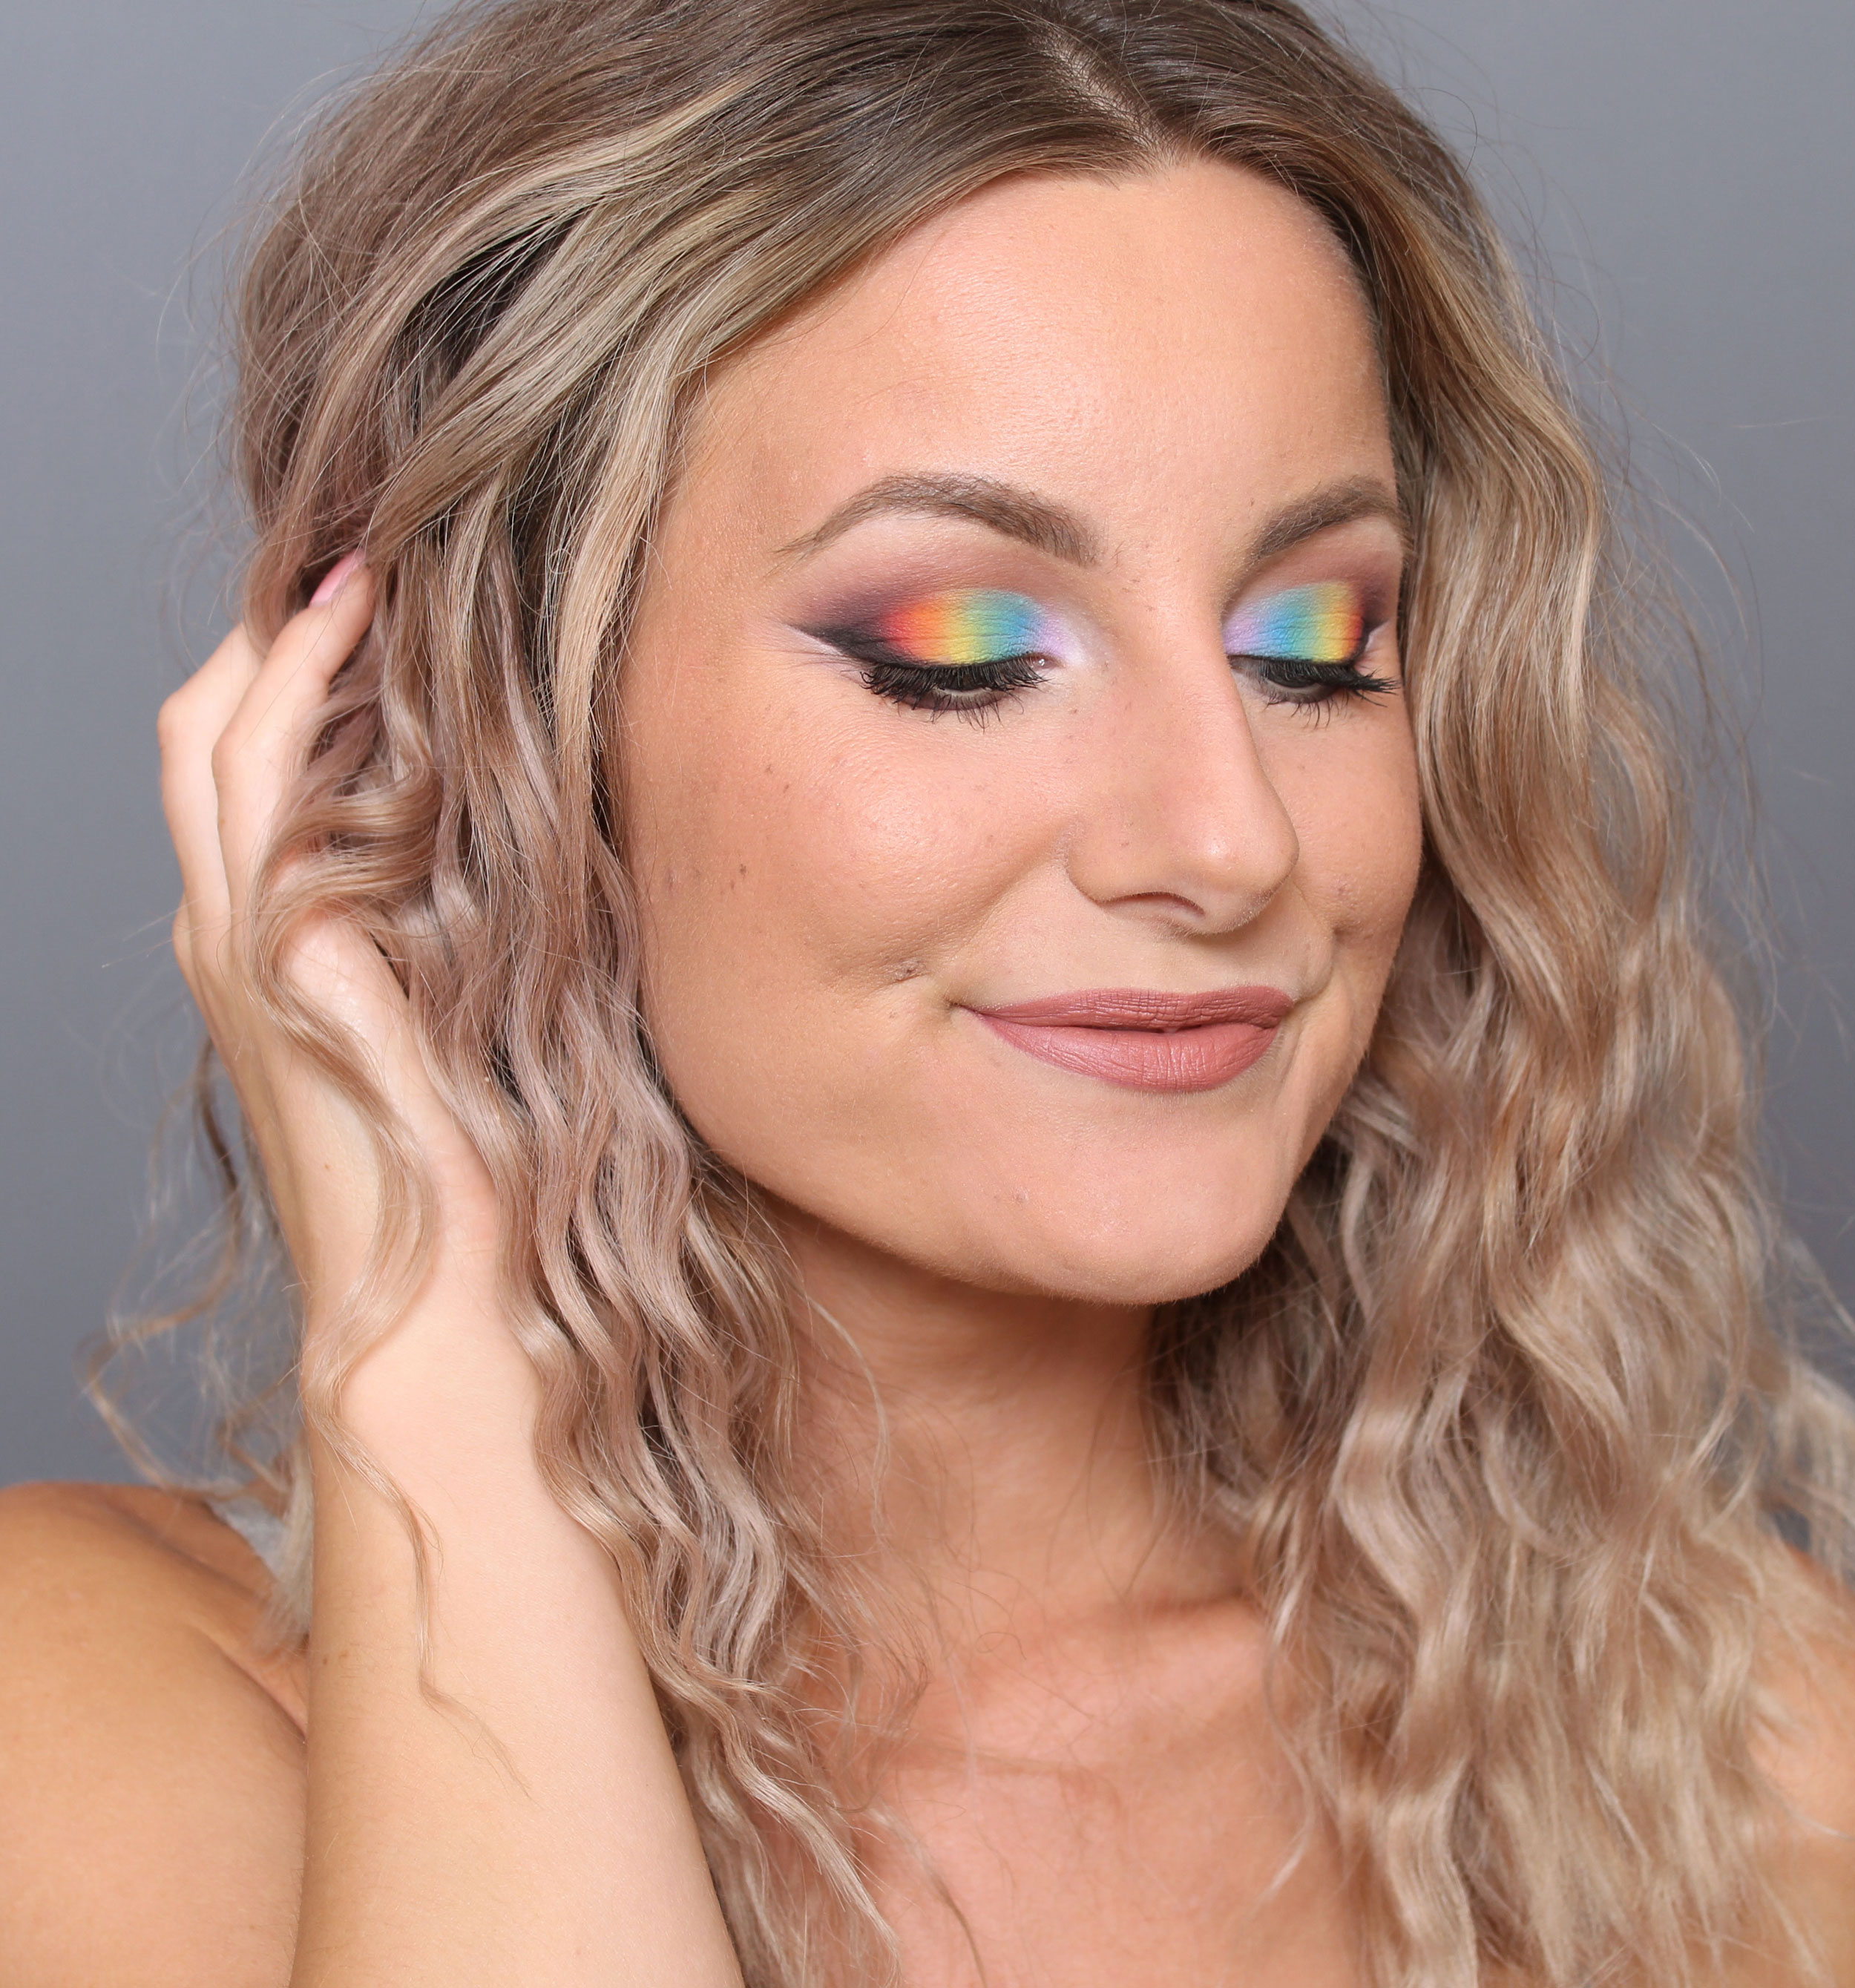 pride makeup